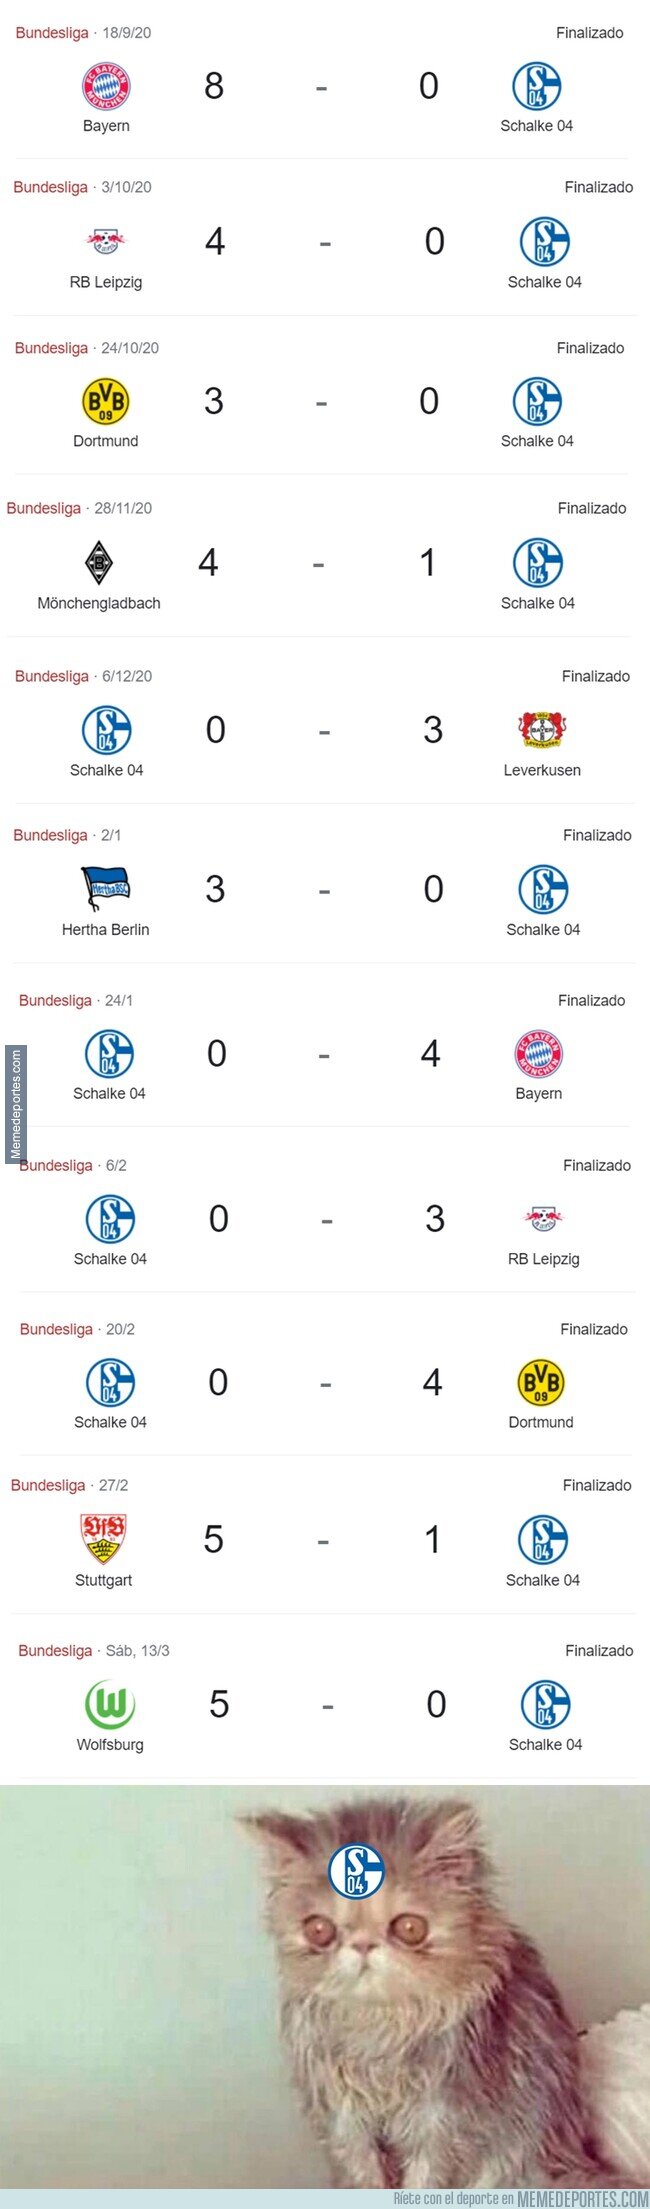 1130397 - El Schalke 04 esta temporada. Un cataclismo.